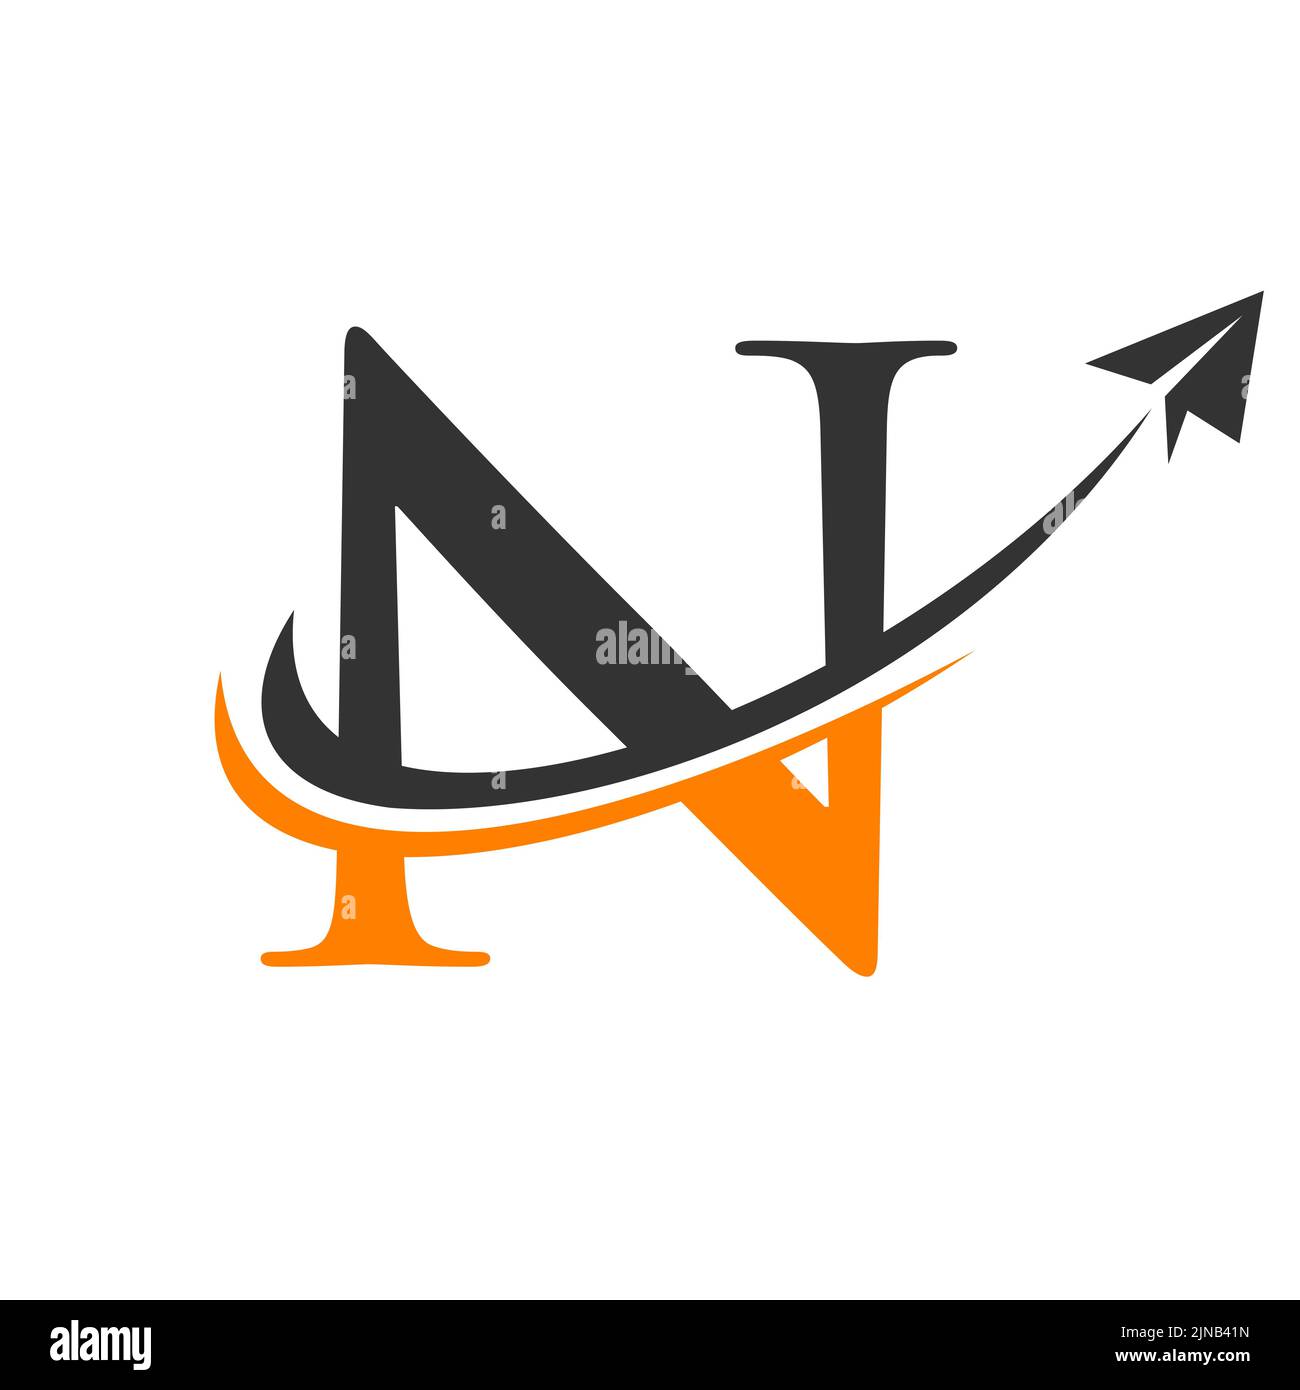 Travel Logo On Letter N Vector Template. Letter N Air Travel Logo Design Stock Vector